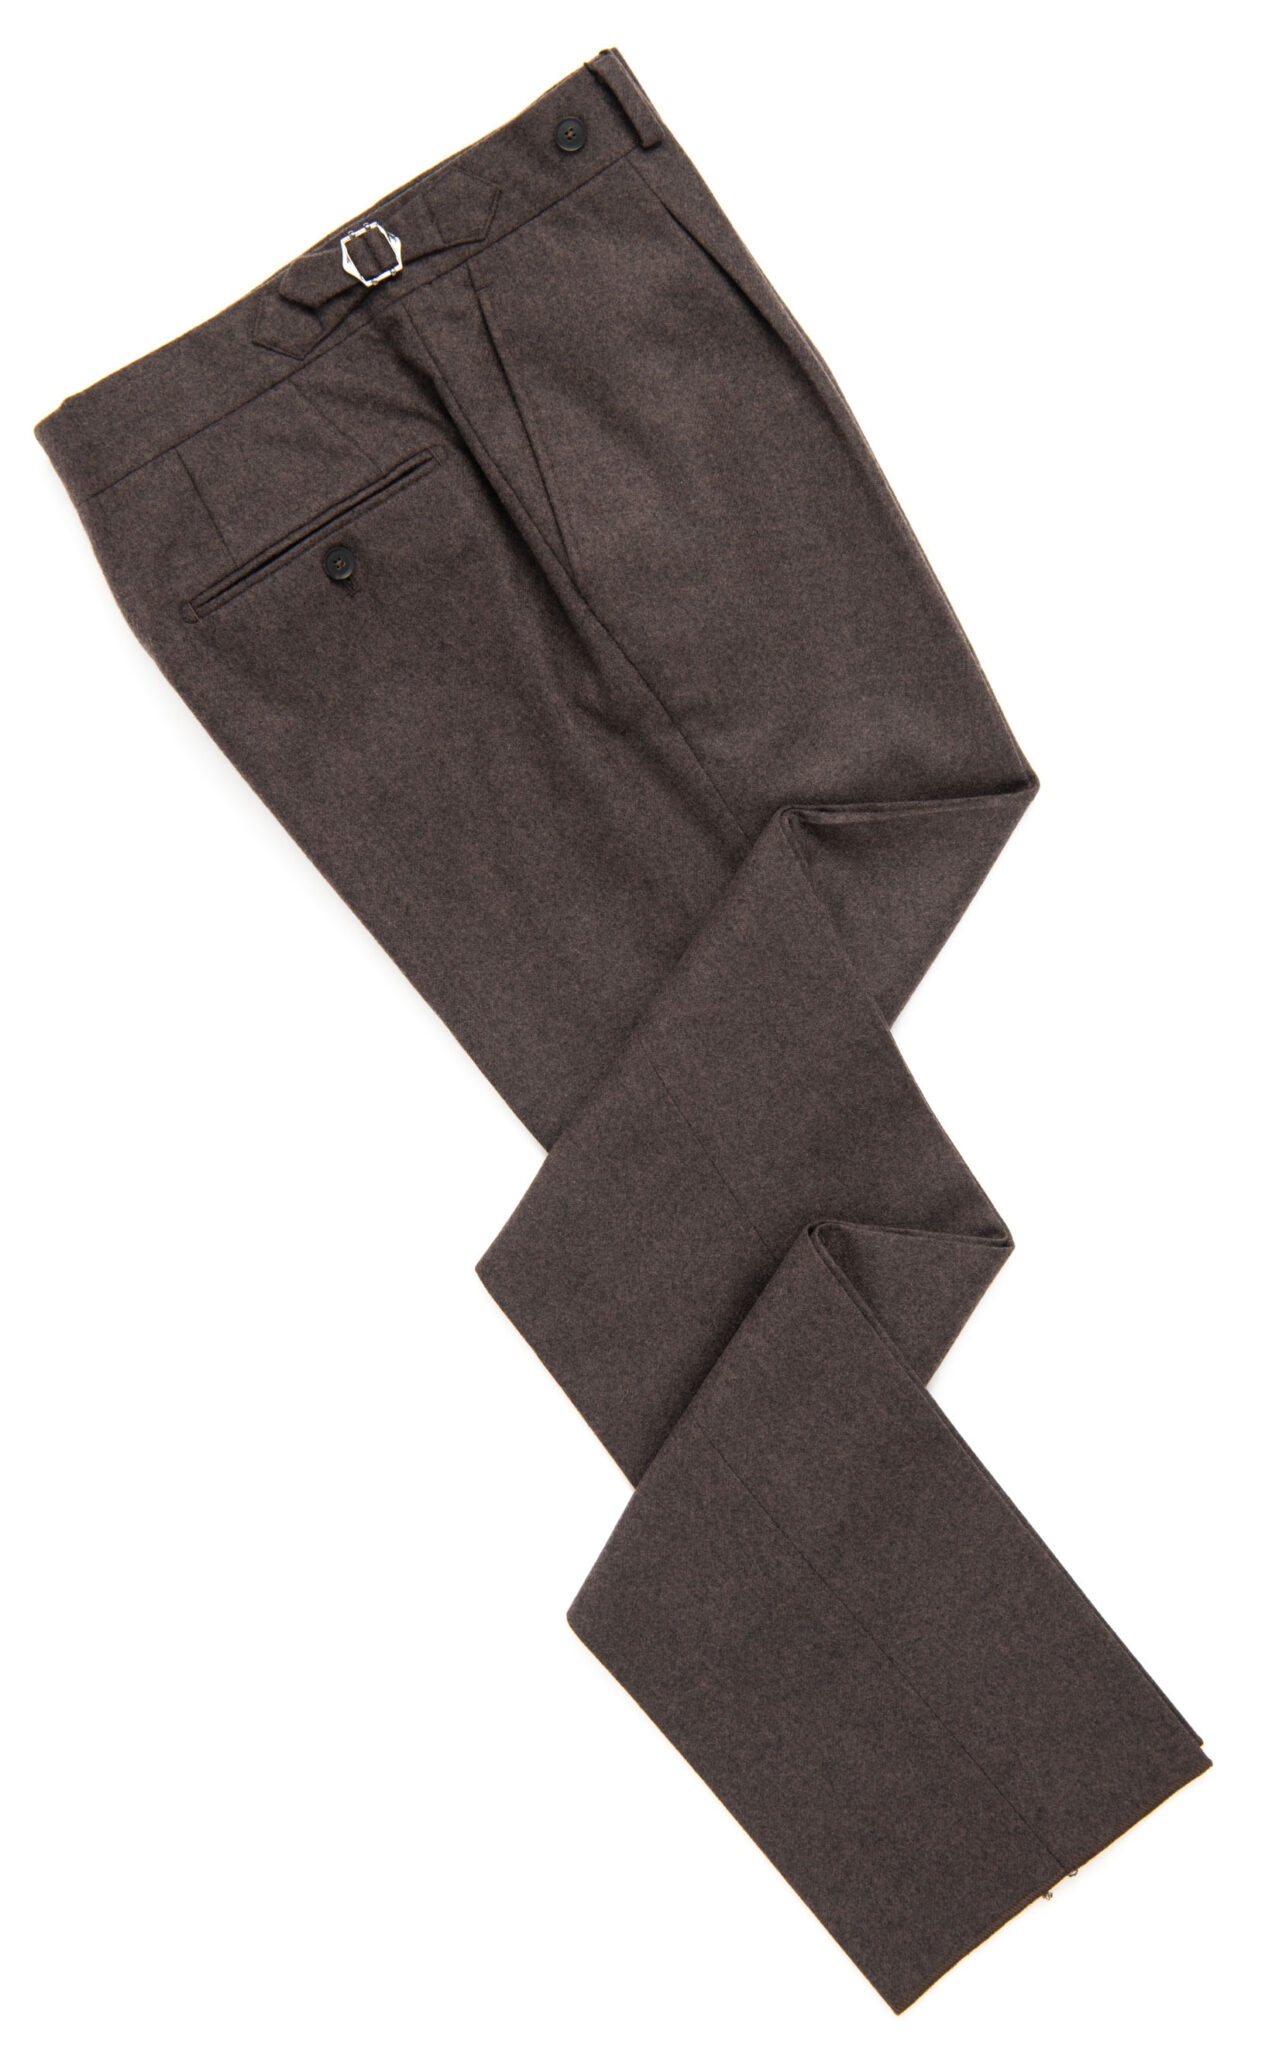 Flannel Trousers at Spier & Mackay – Menswear Musings